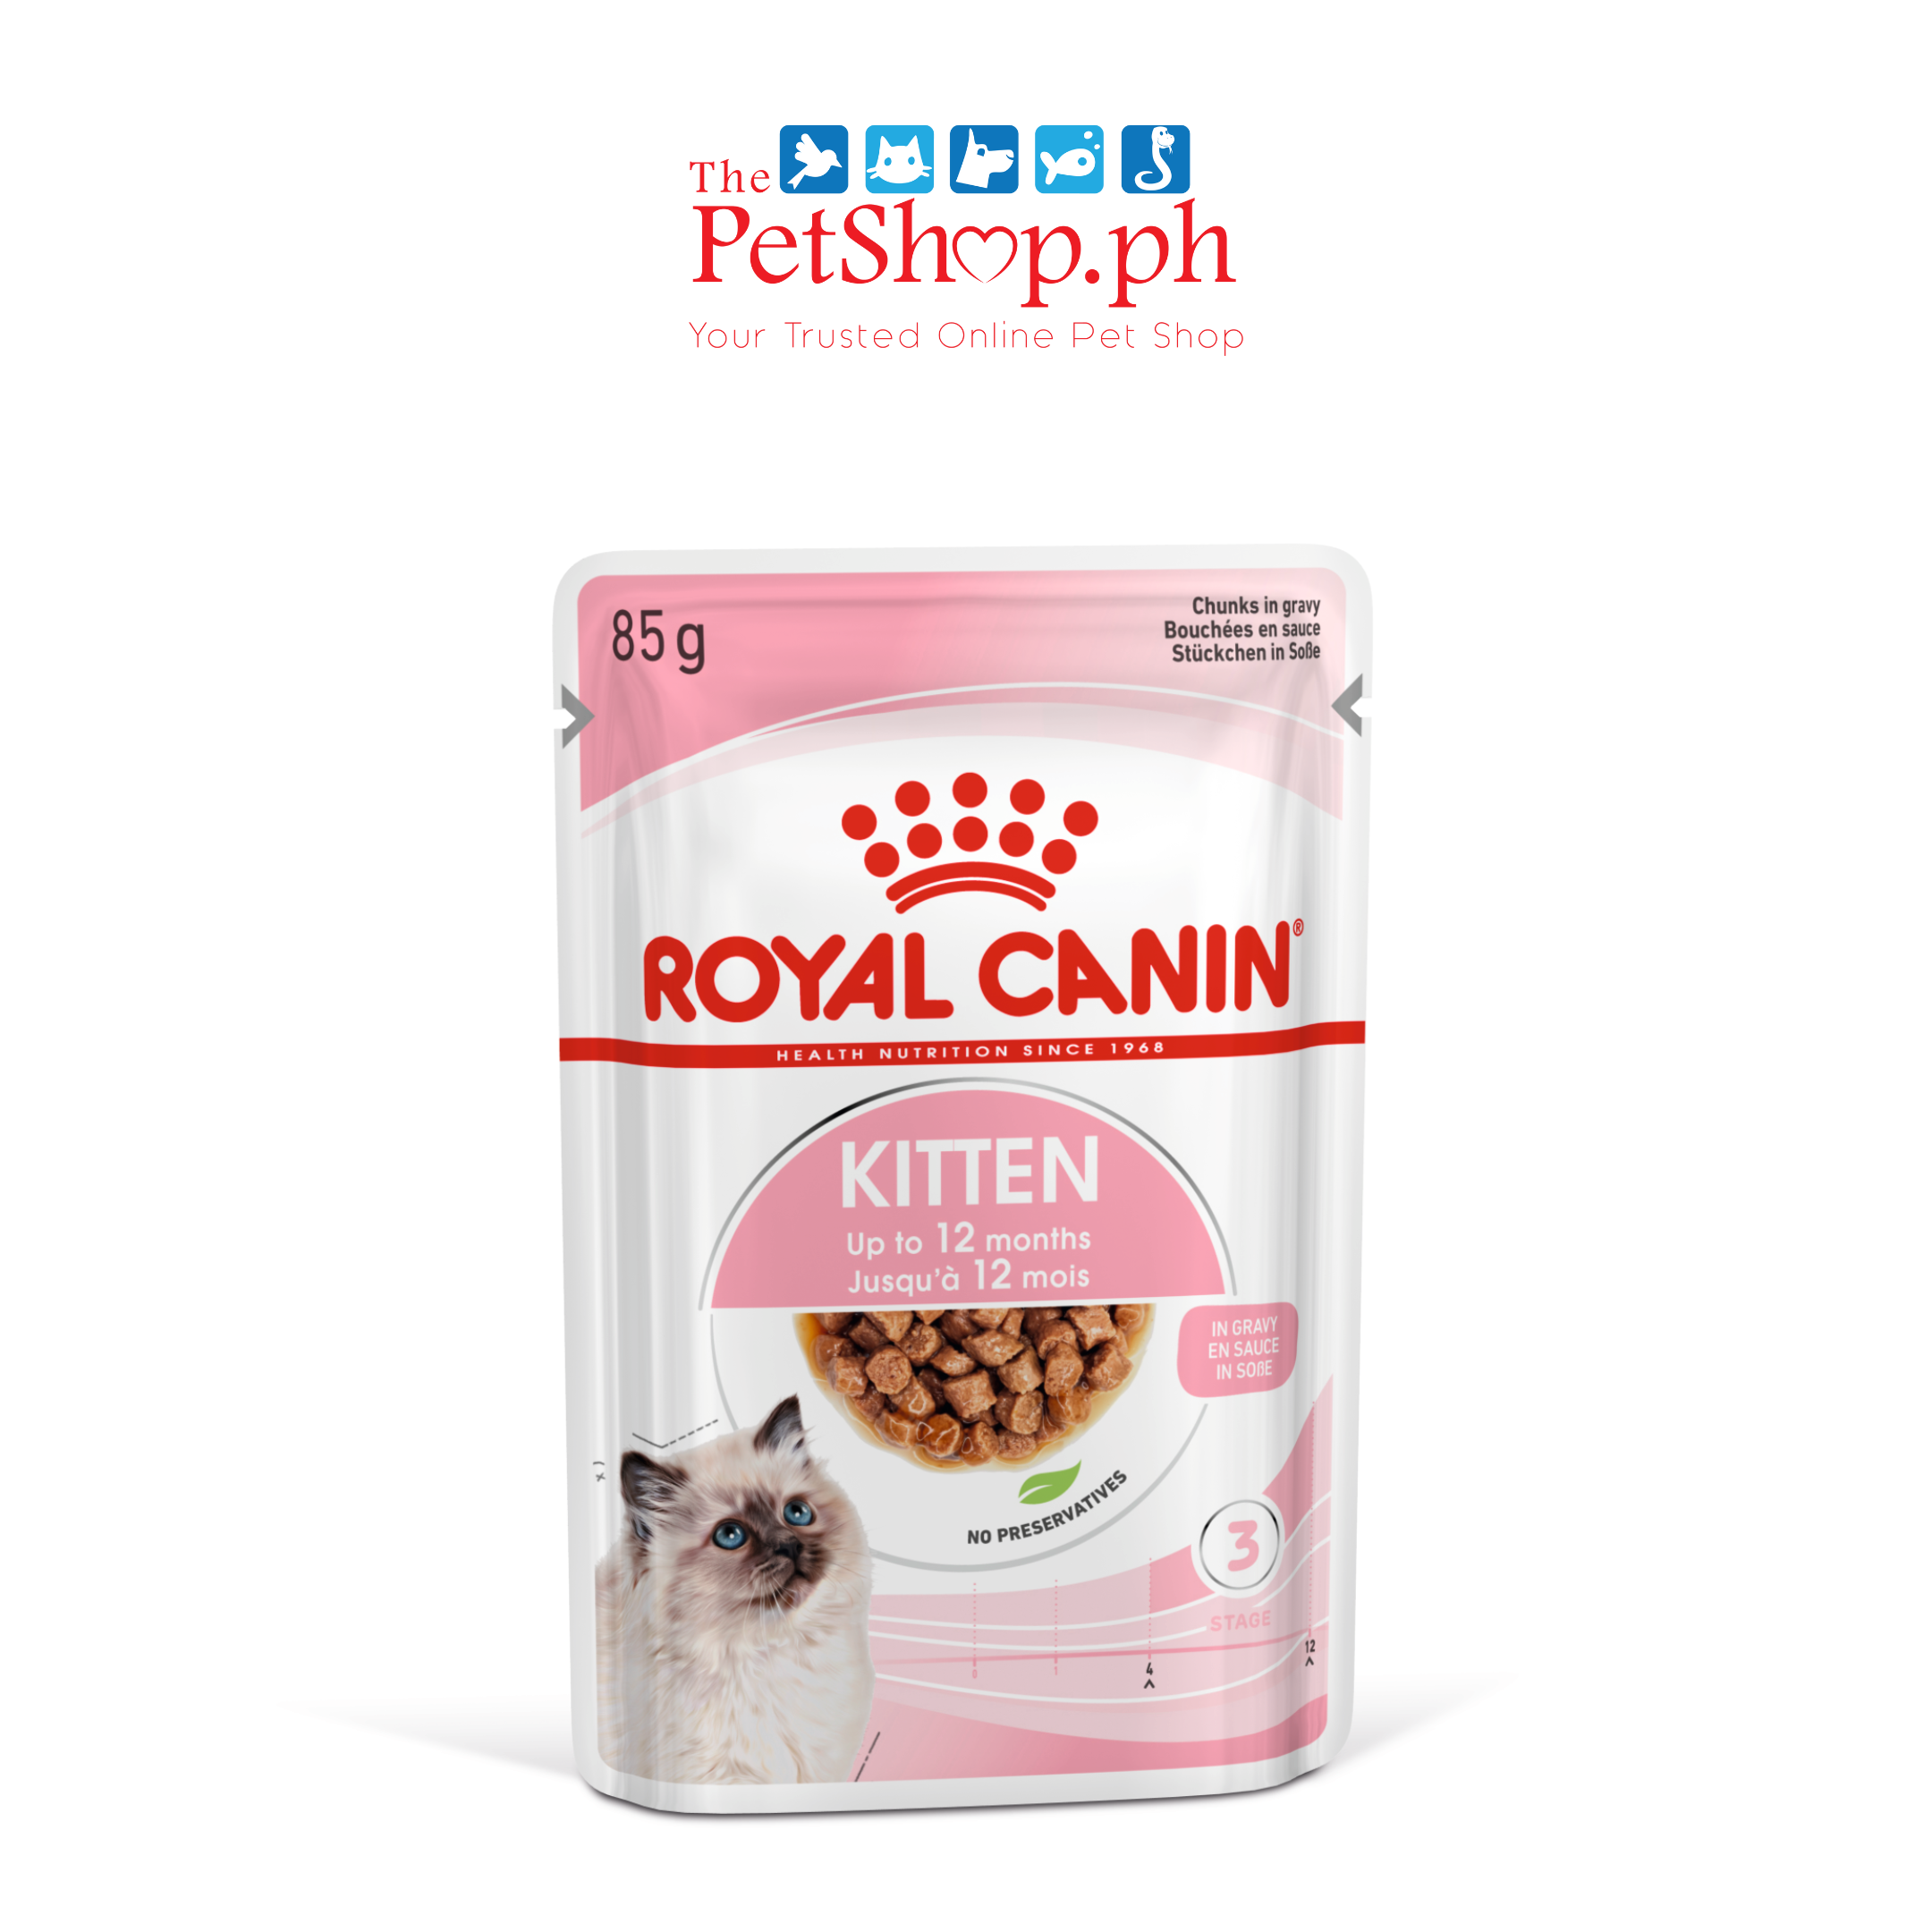 Royal Canin Kitten Instinctive 85g Set of 12 Gravy Wet Cat Food - Feline Health Nutrition